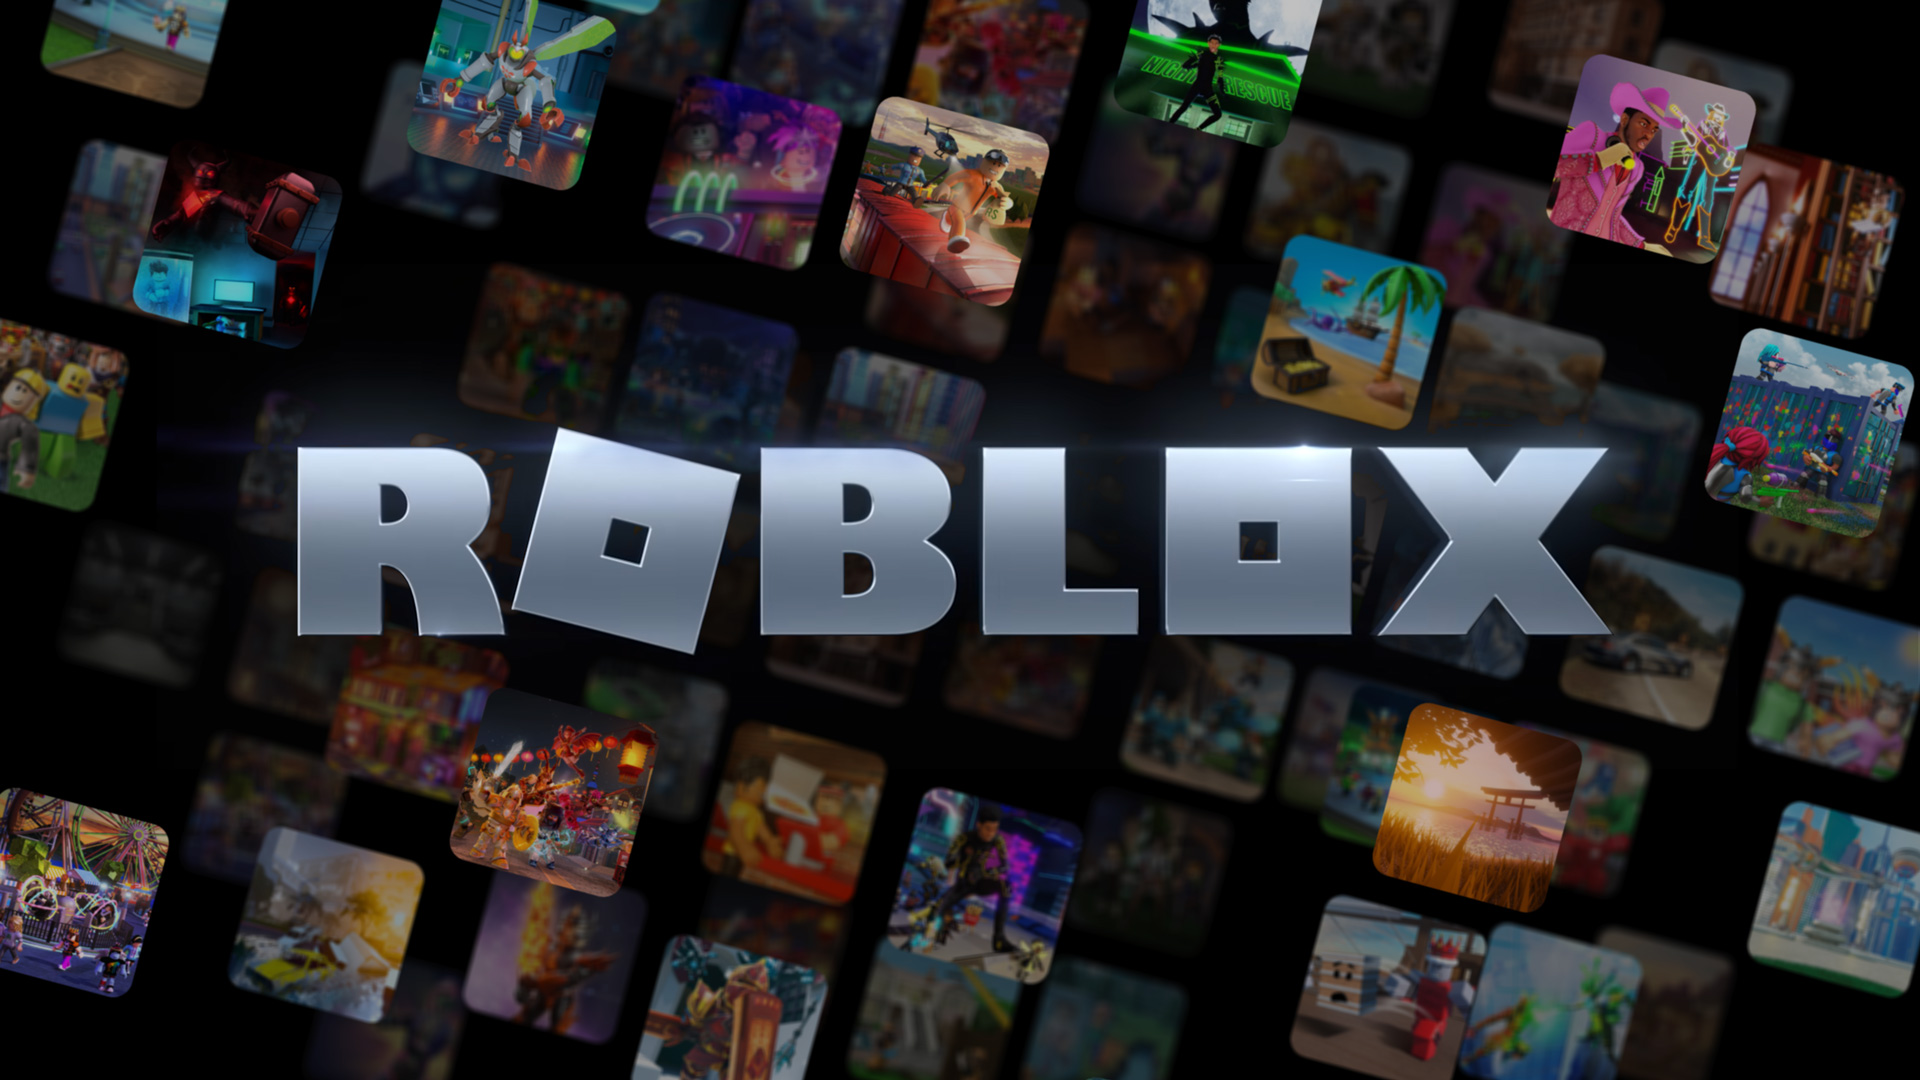 1700 Robux – Robux Roblox - Fortnite - FreeFire - Cedigitales